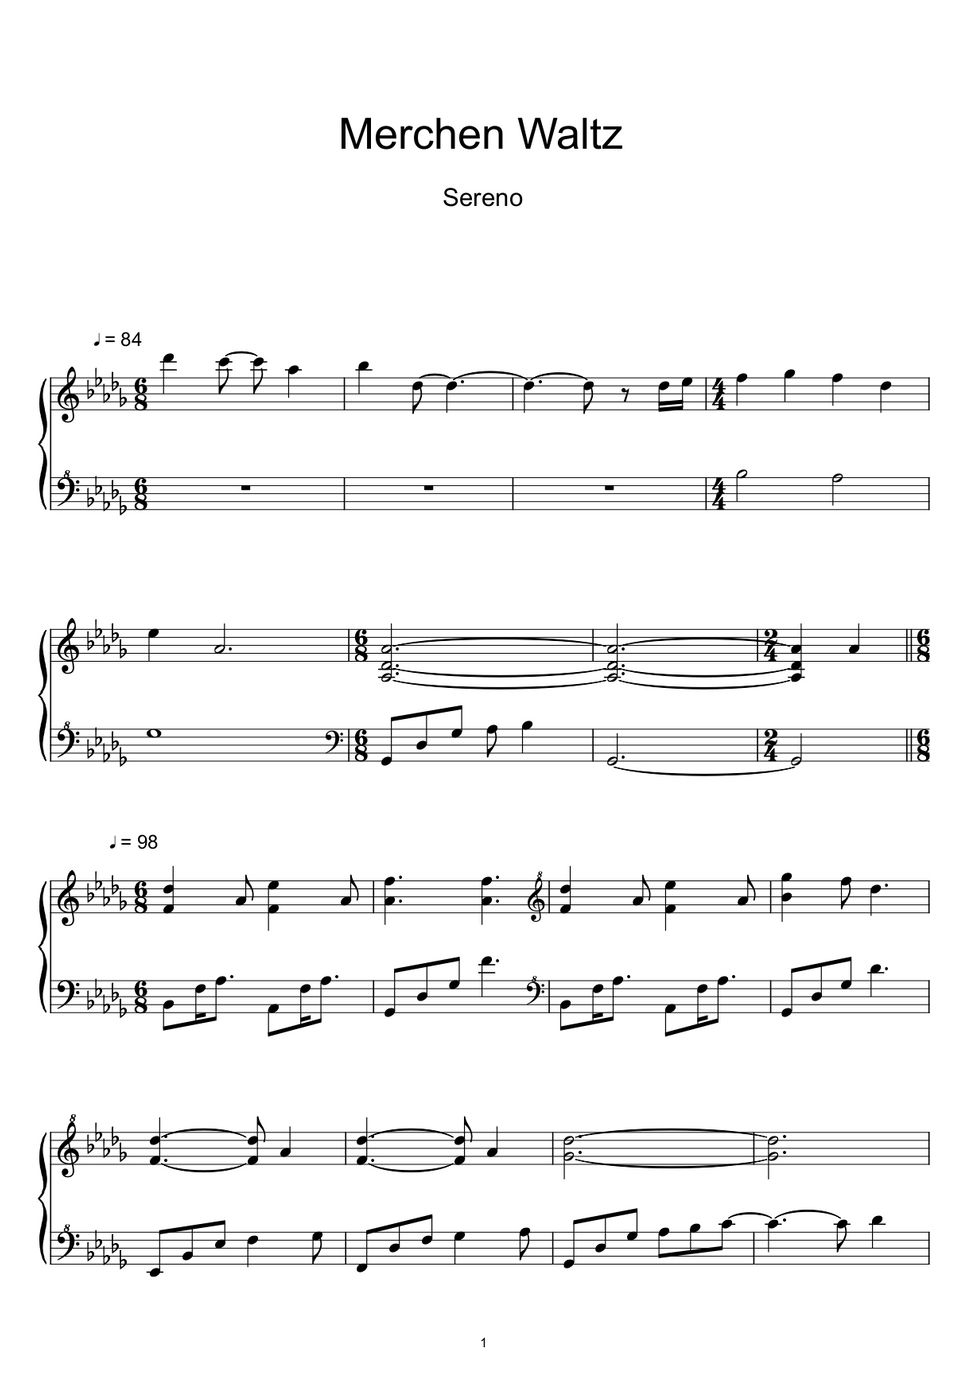 세레노 (Sereno) - 메르헨 왈츠 (Marchen Waltz) (Sheet Music, MIDI,) by sayu